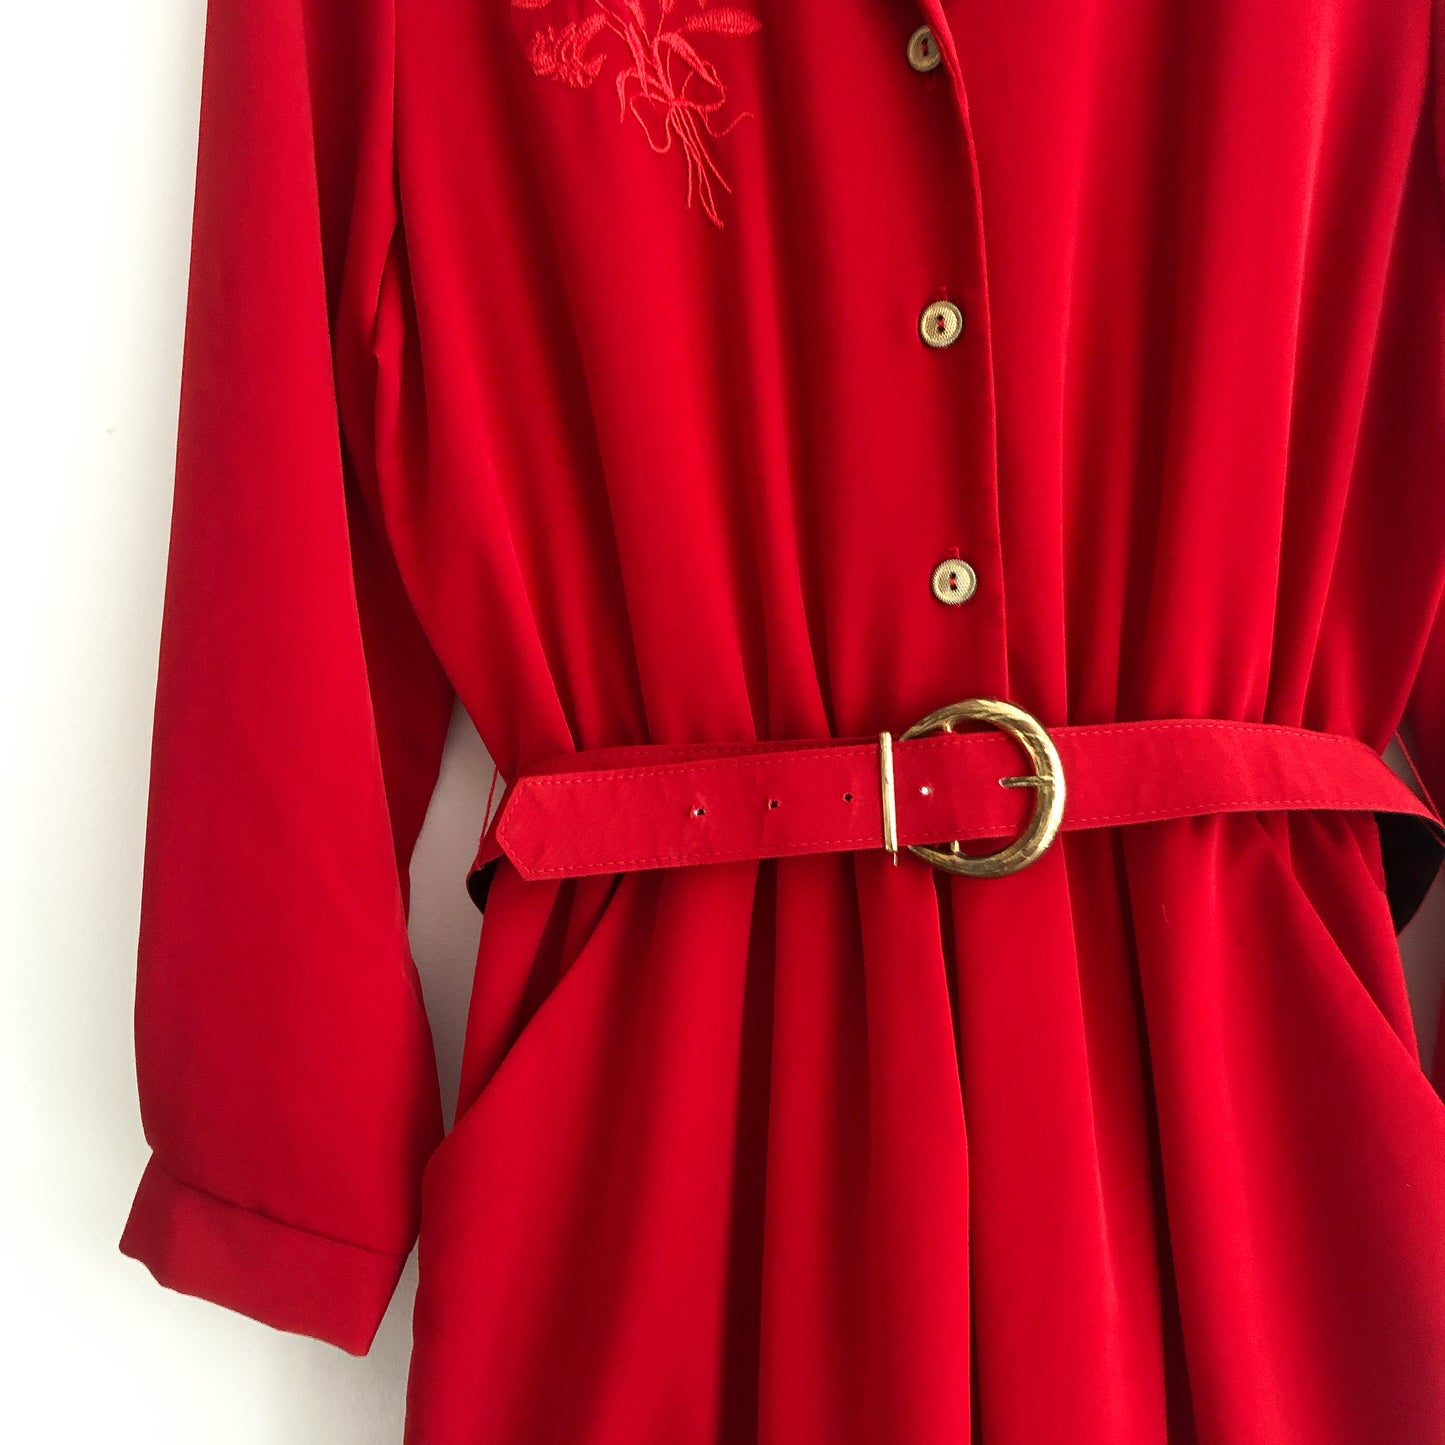 Vintage Leslie Belle Red Dress